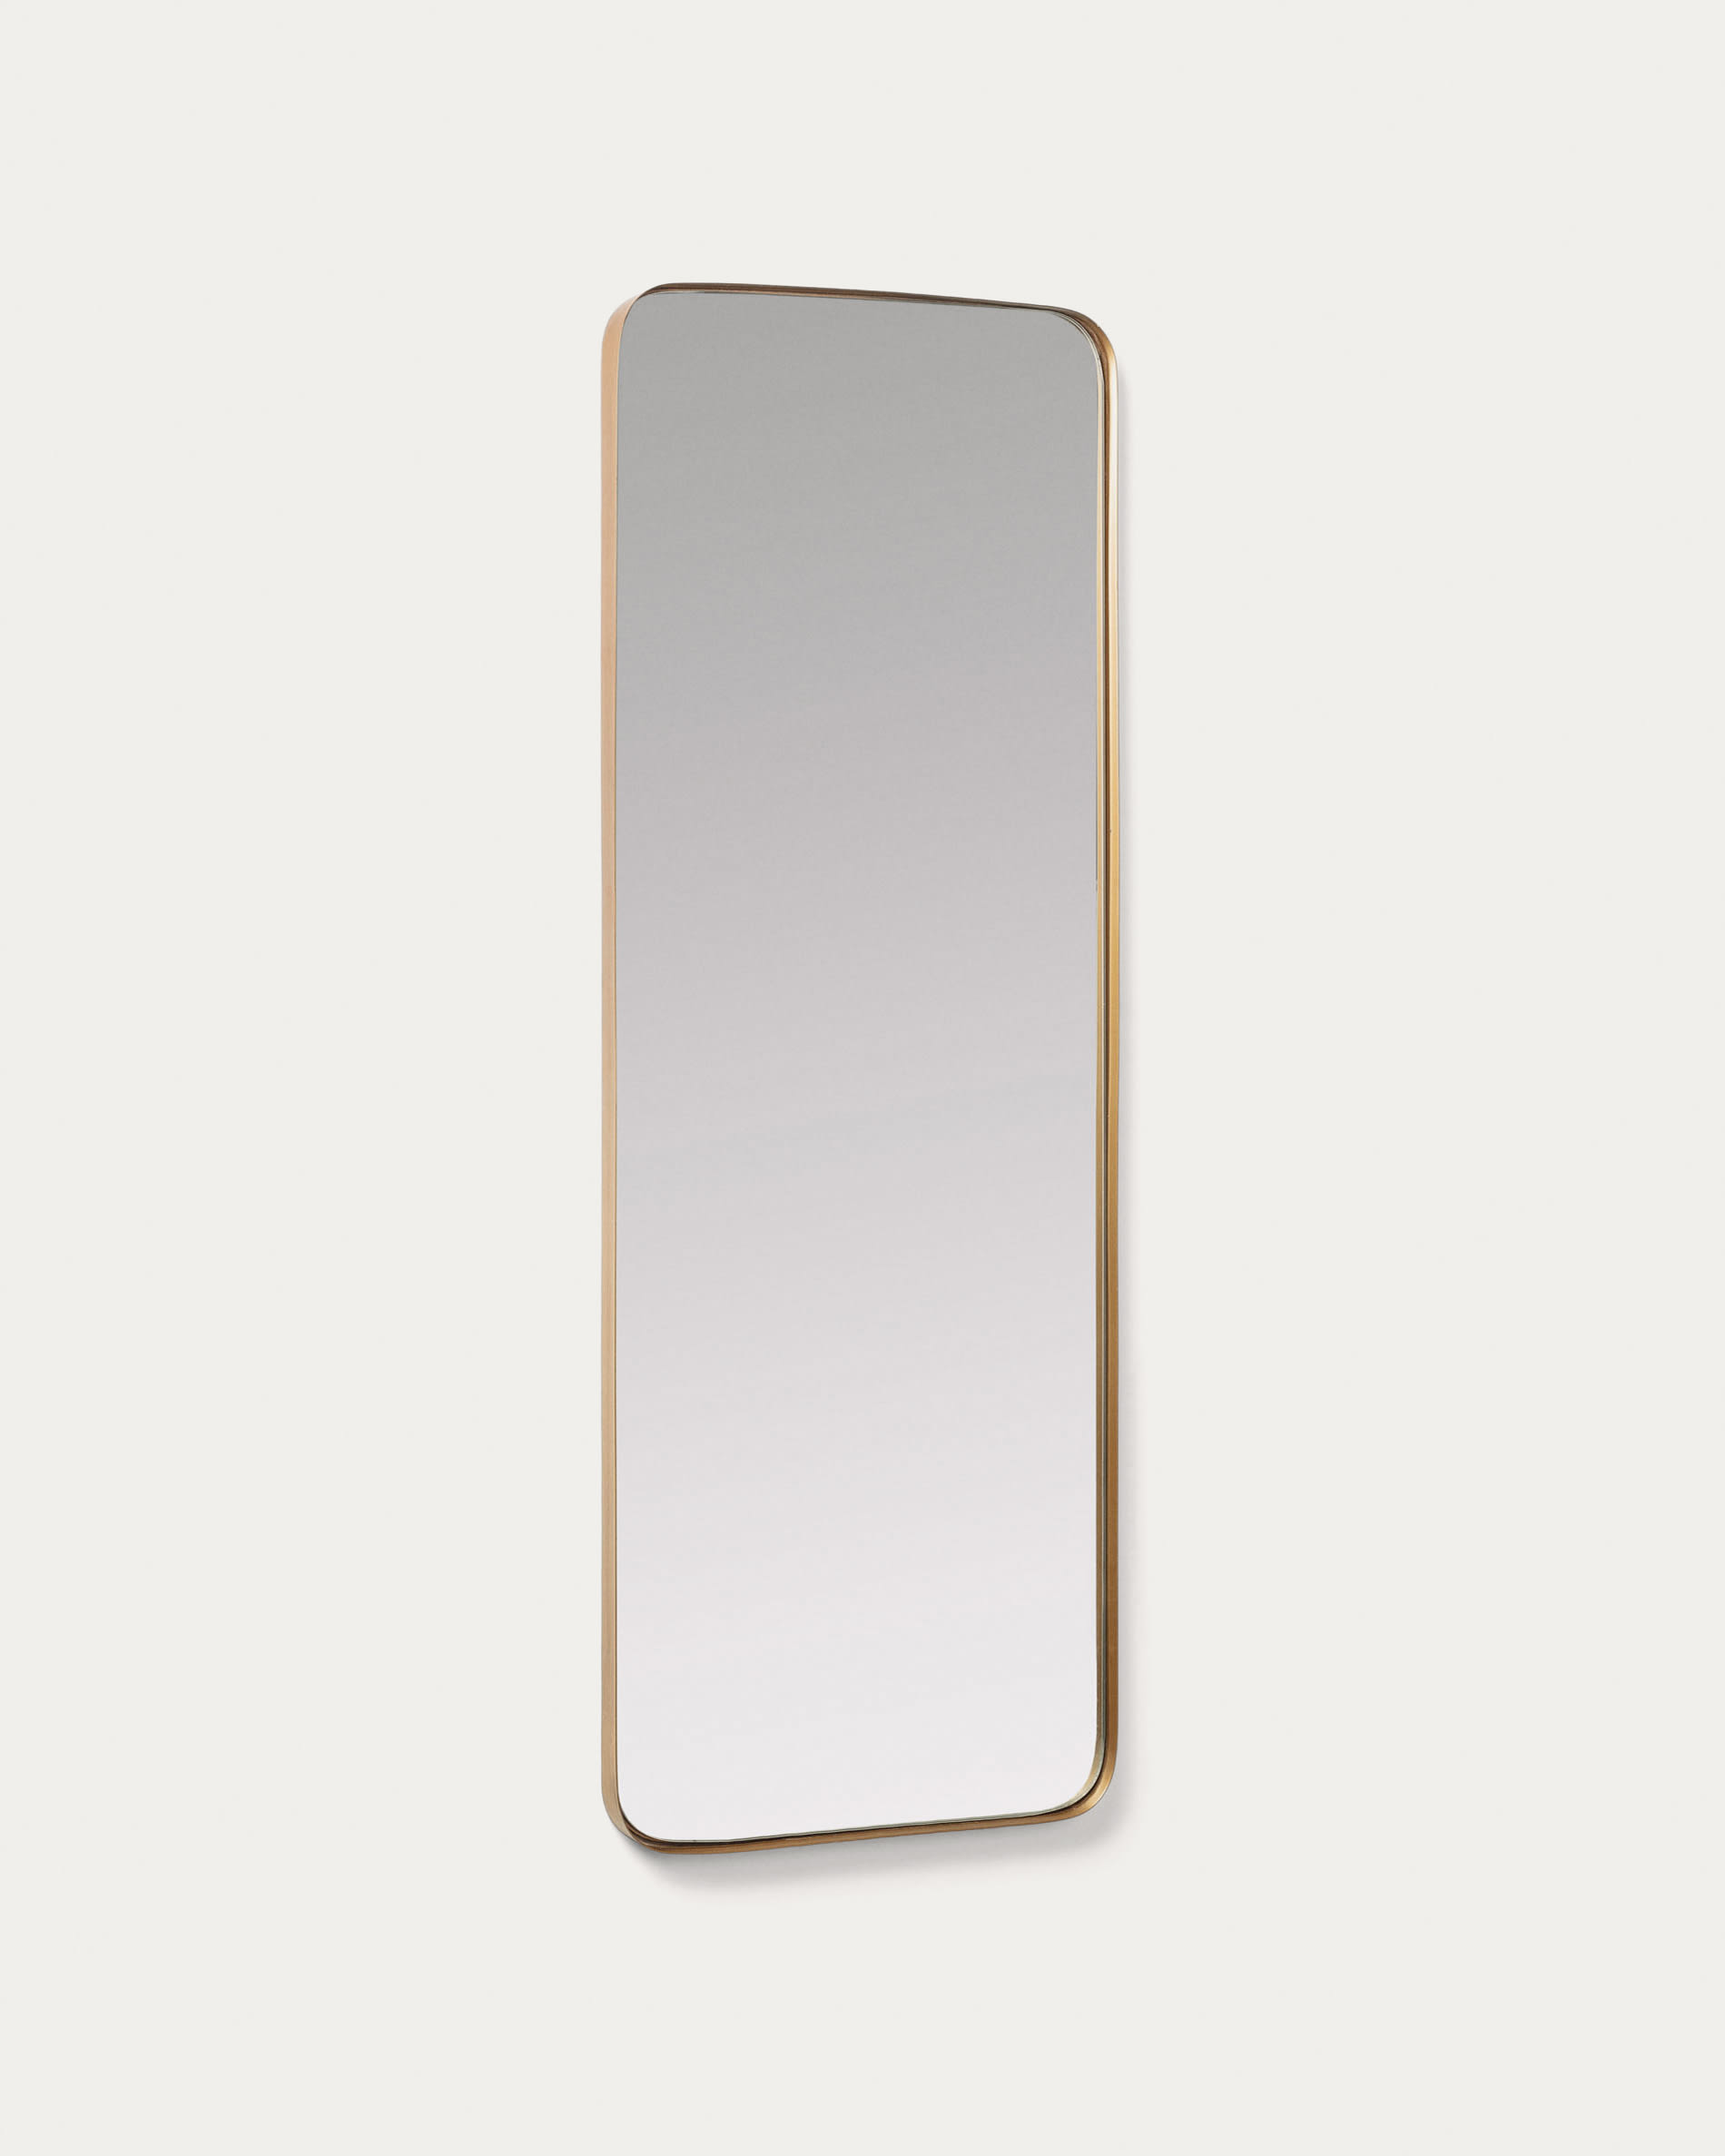 70 x 50cm Metallo Placcato Specchio da Parete Grande in Metallo Elegance by Casa Chic Oro 